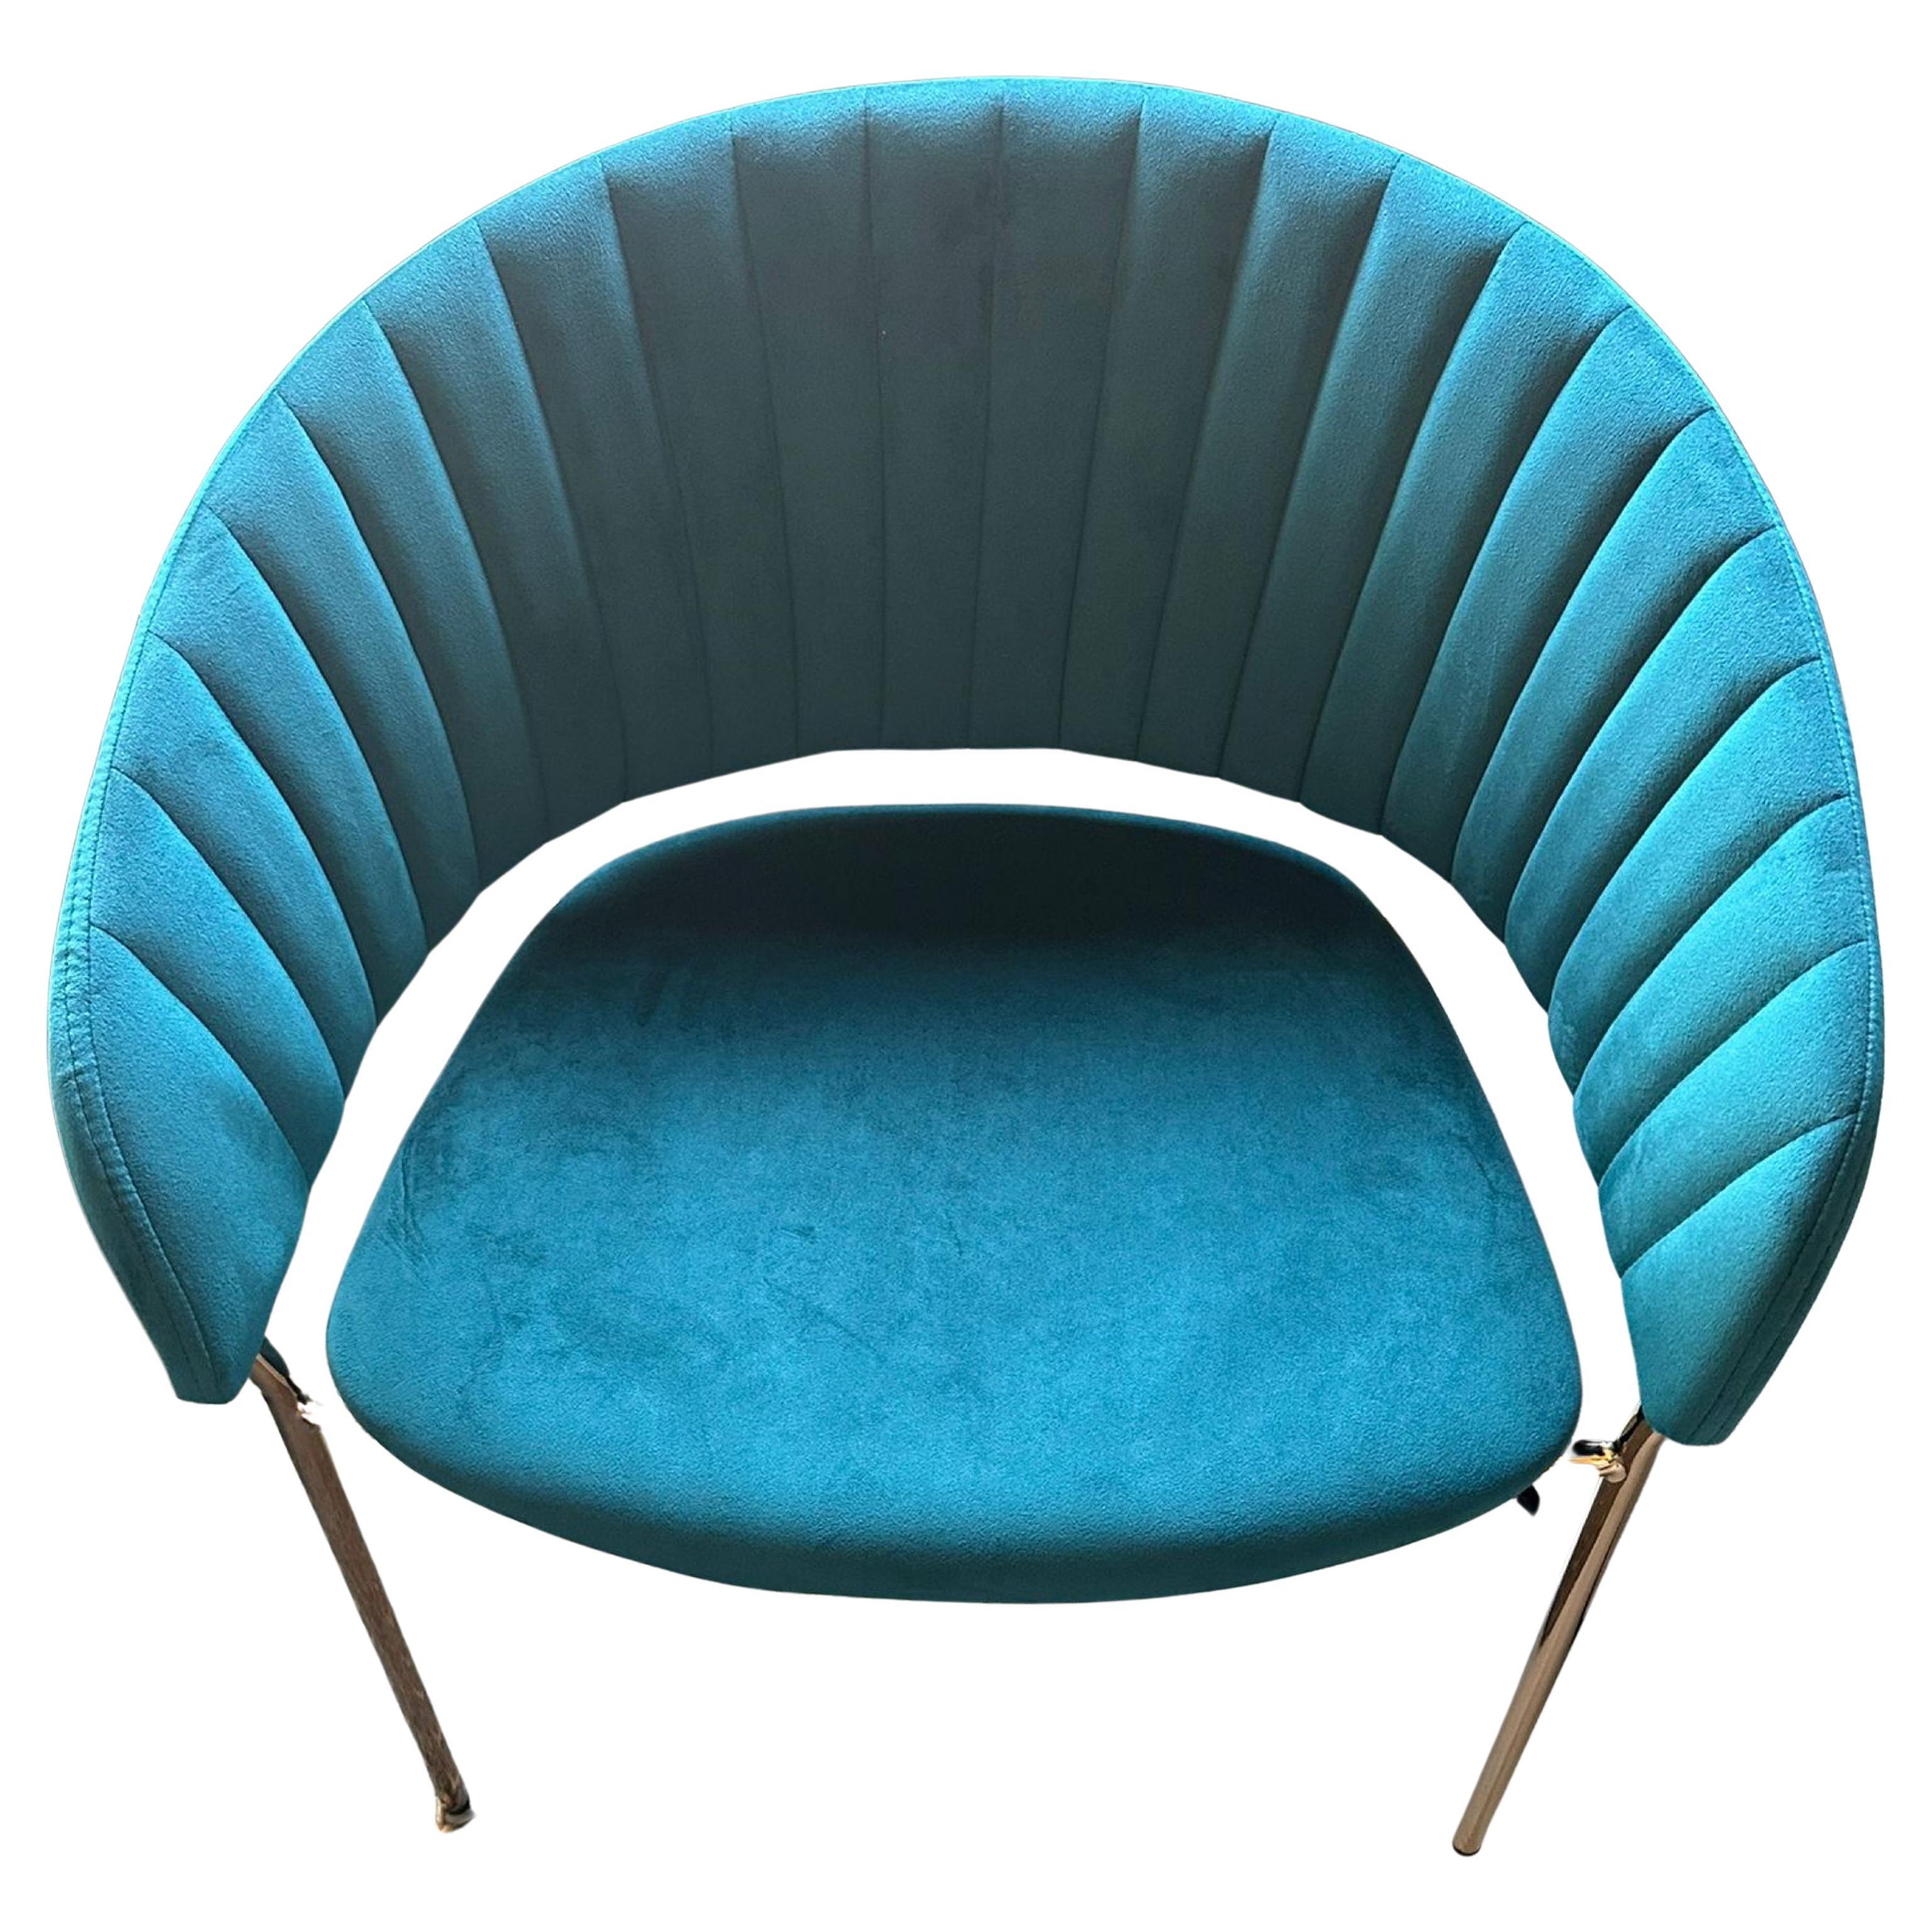 Nouveaux fauteuils espagnols en arbre bleu « Pavo Real »
belles chaises espagnoles neuves
73cm x 57cm x 41cm
Neufs.